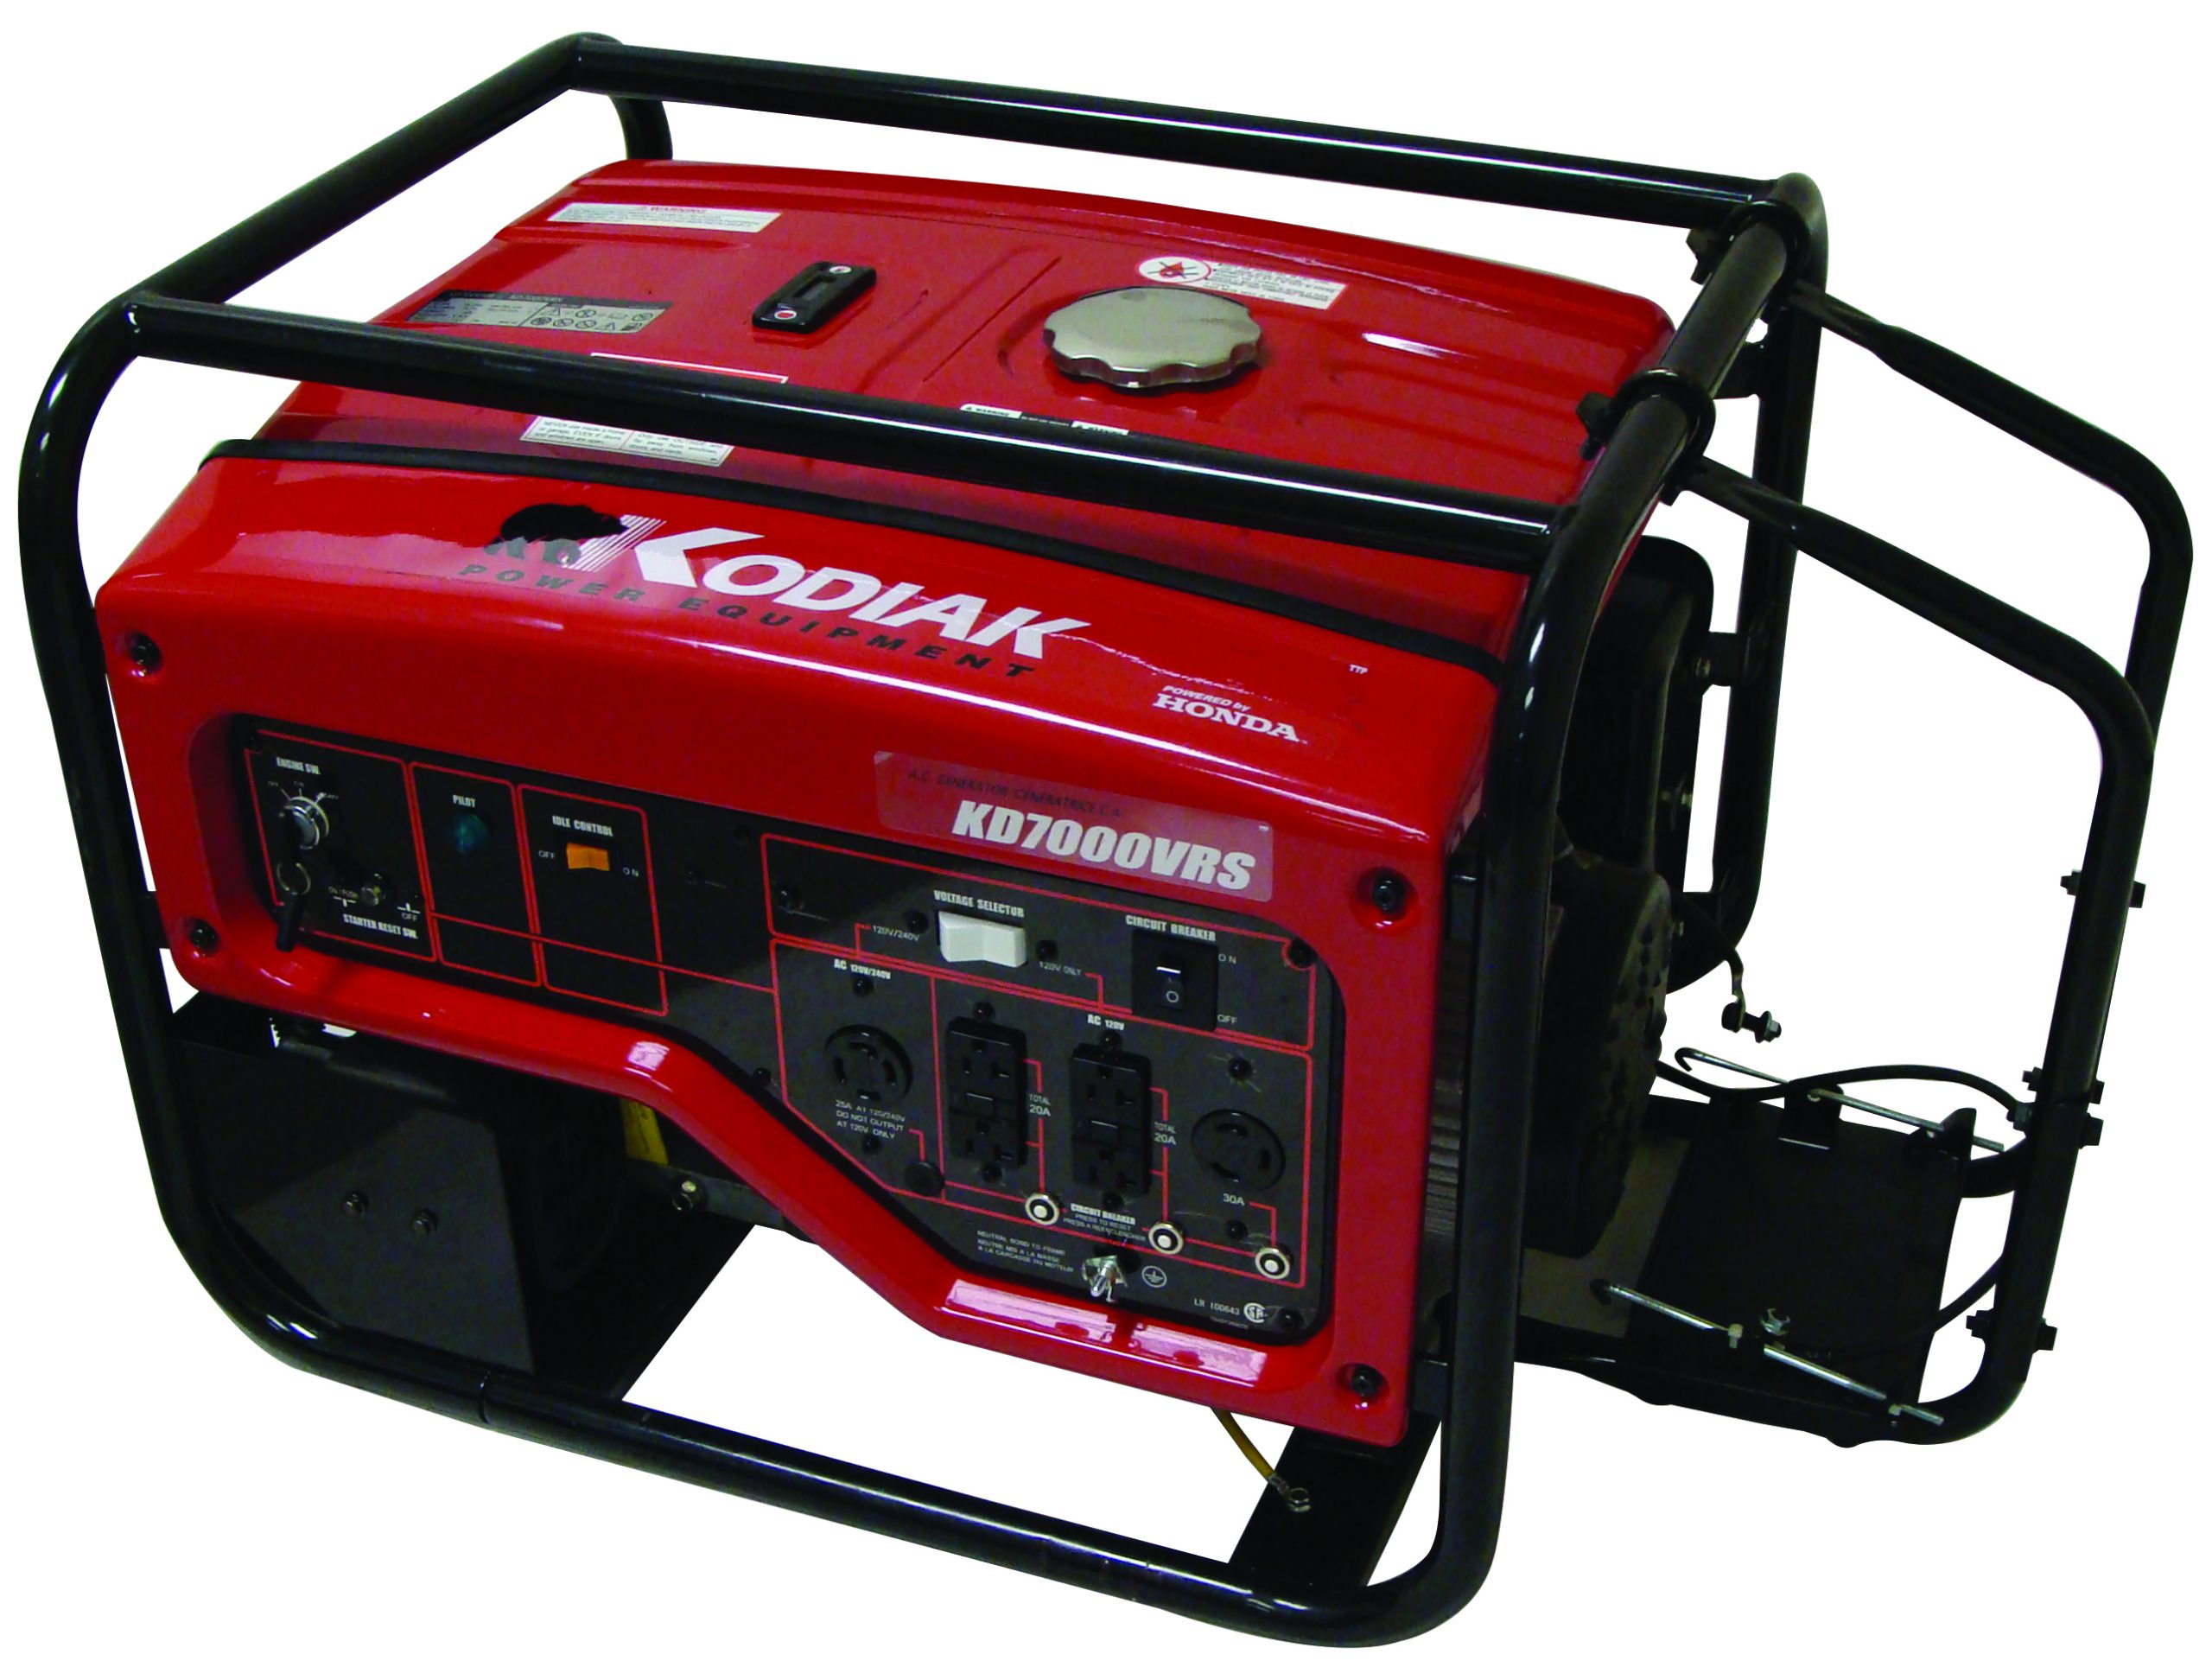 Kodiak KD7000VRS Portable Generators